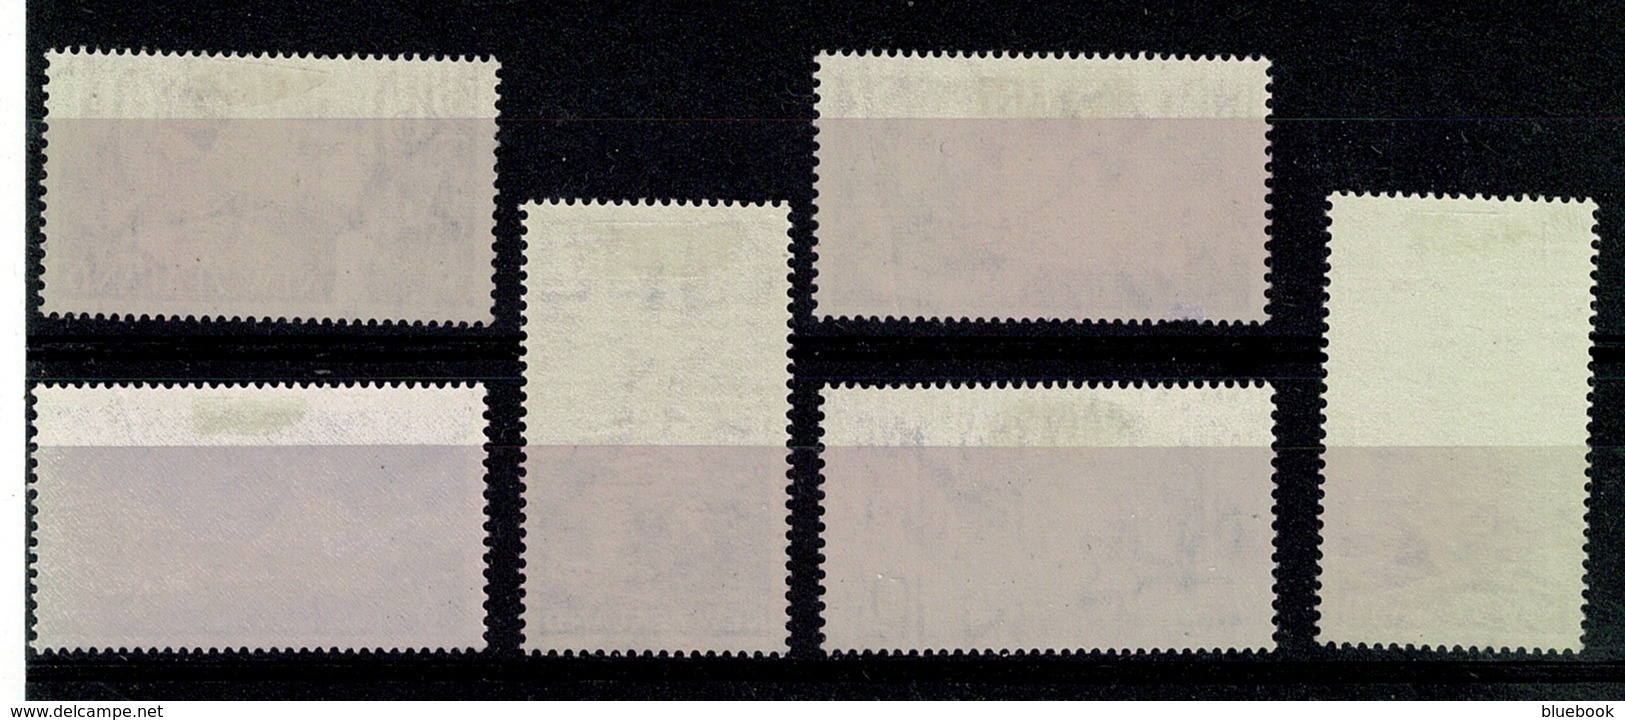 Ref 1328 - 1960 - 1966 New Zealand Definatives Mint Stamps - Ongebruikt